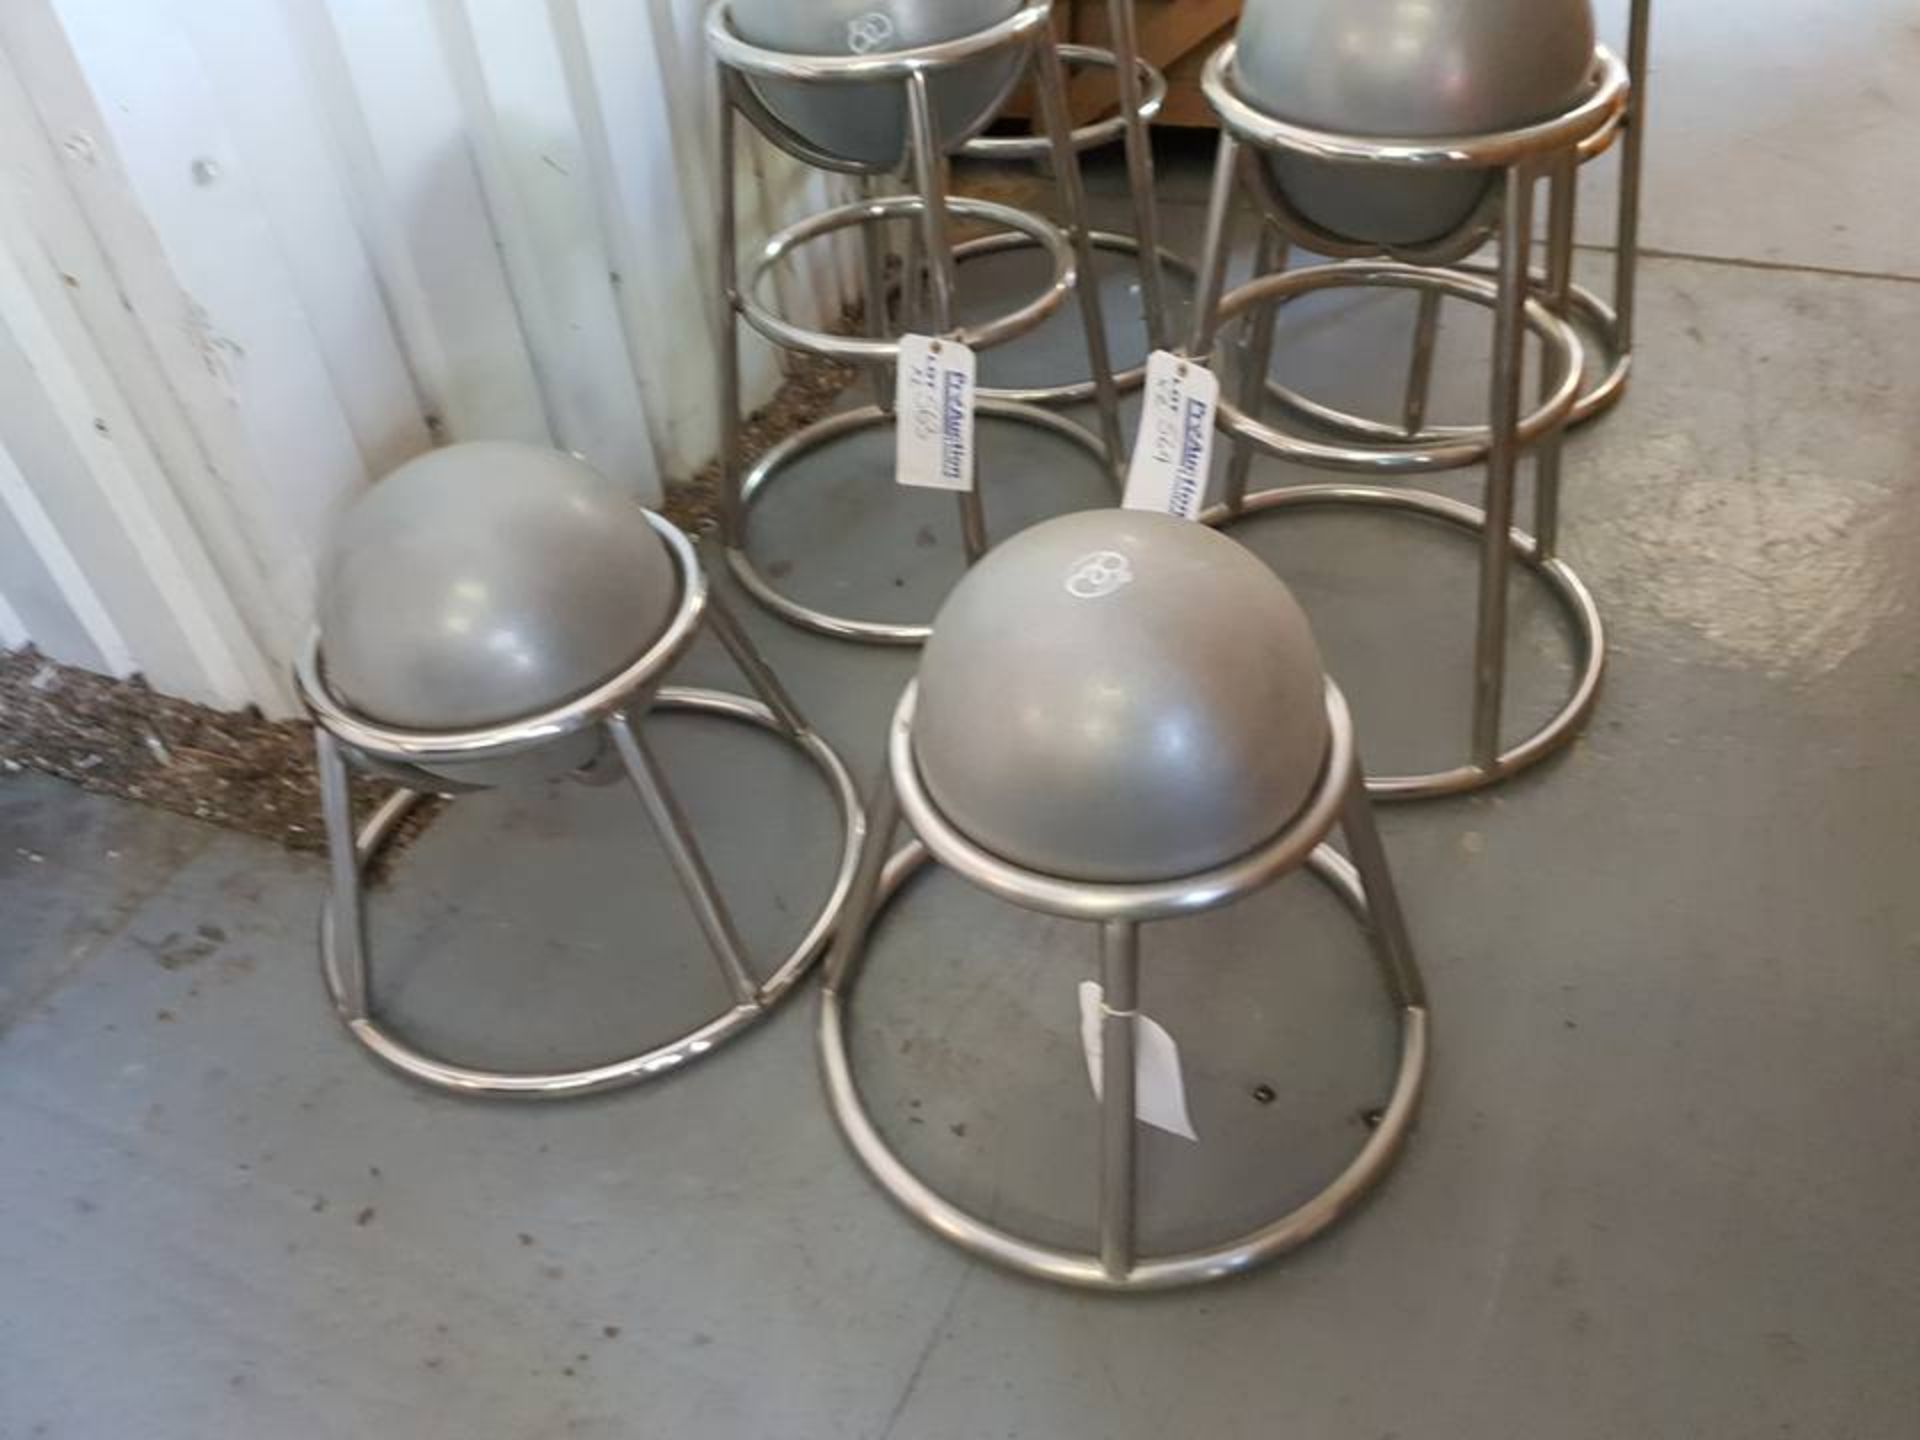 2 x Contemporary bar stools chrome frame with pilates ball grey 35cm